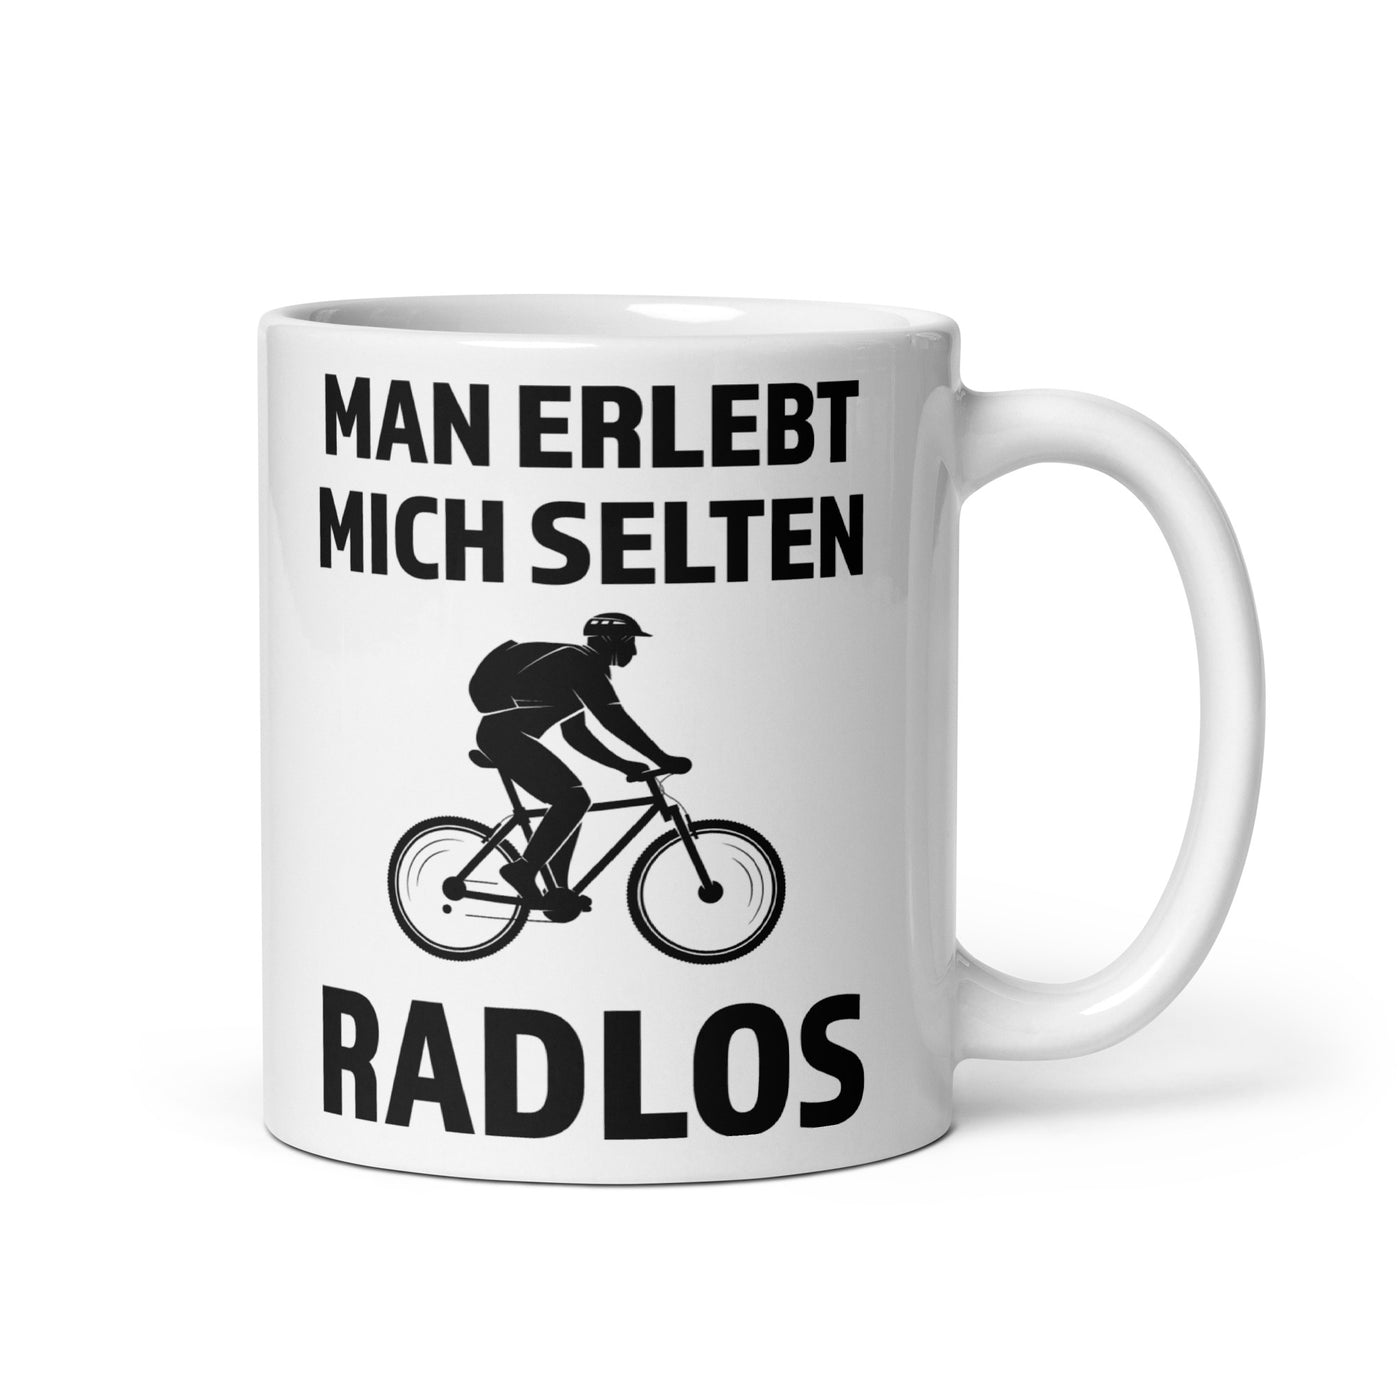 Man Erlebt Mich Selten Radlos - Tasse fahrrad mountainbike